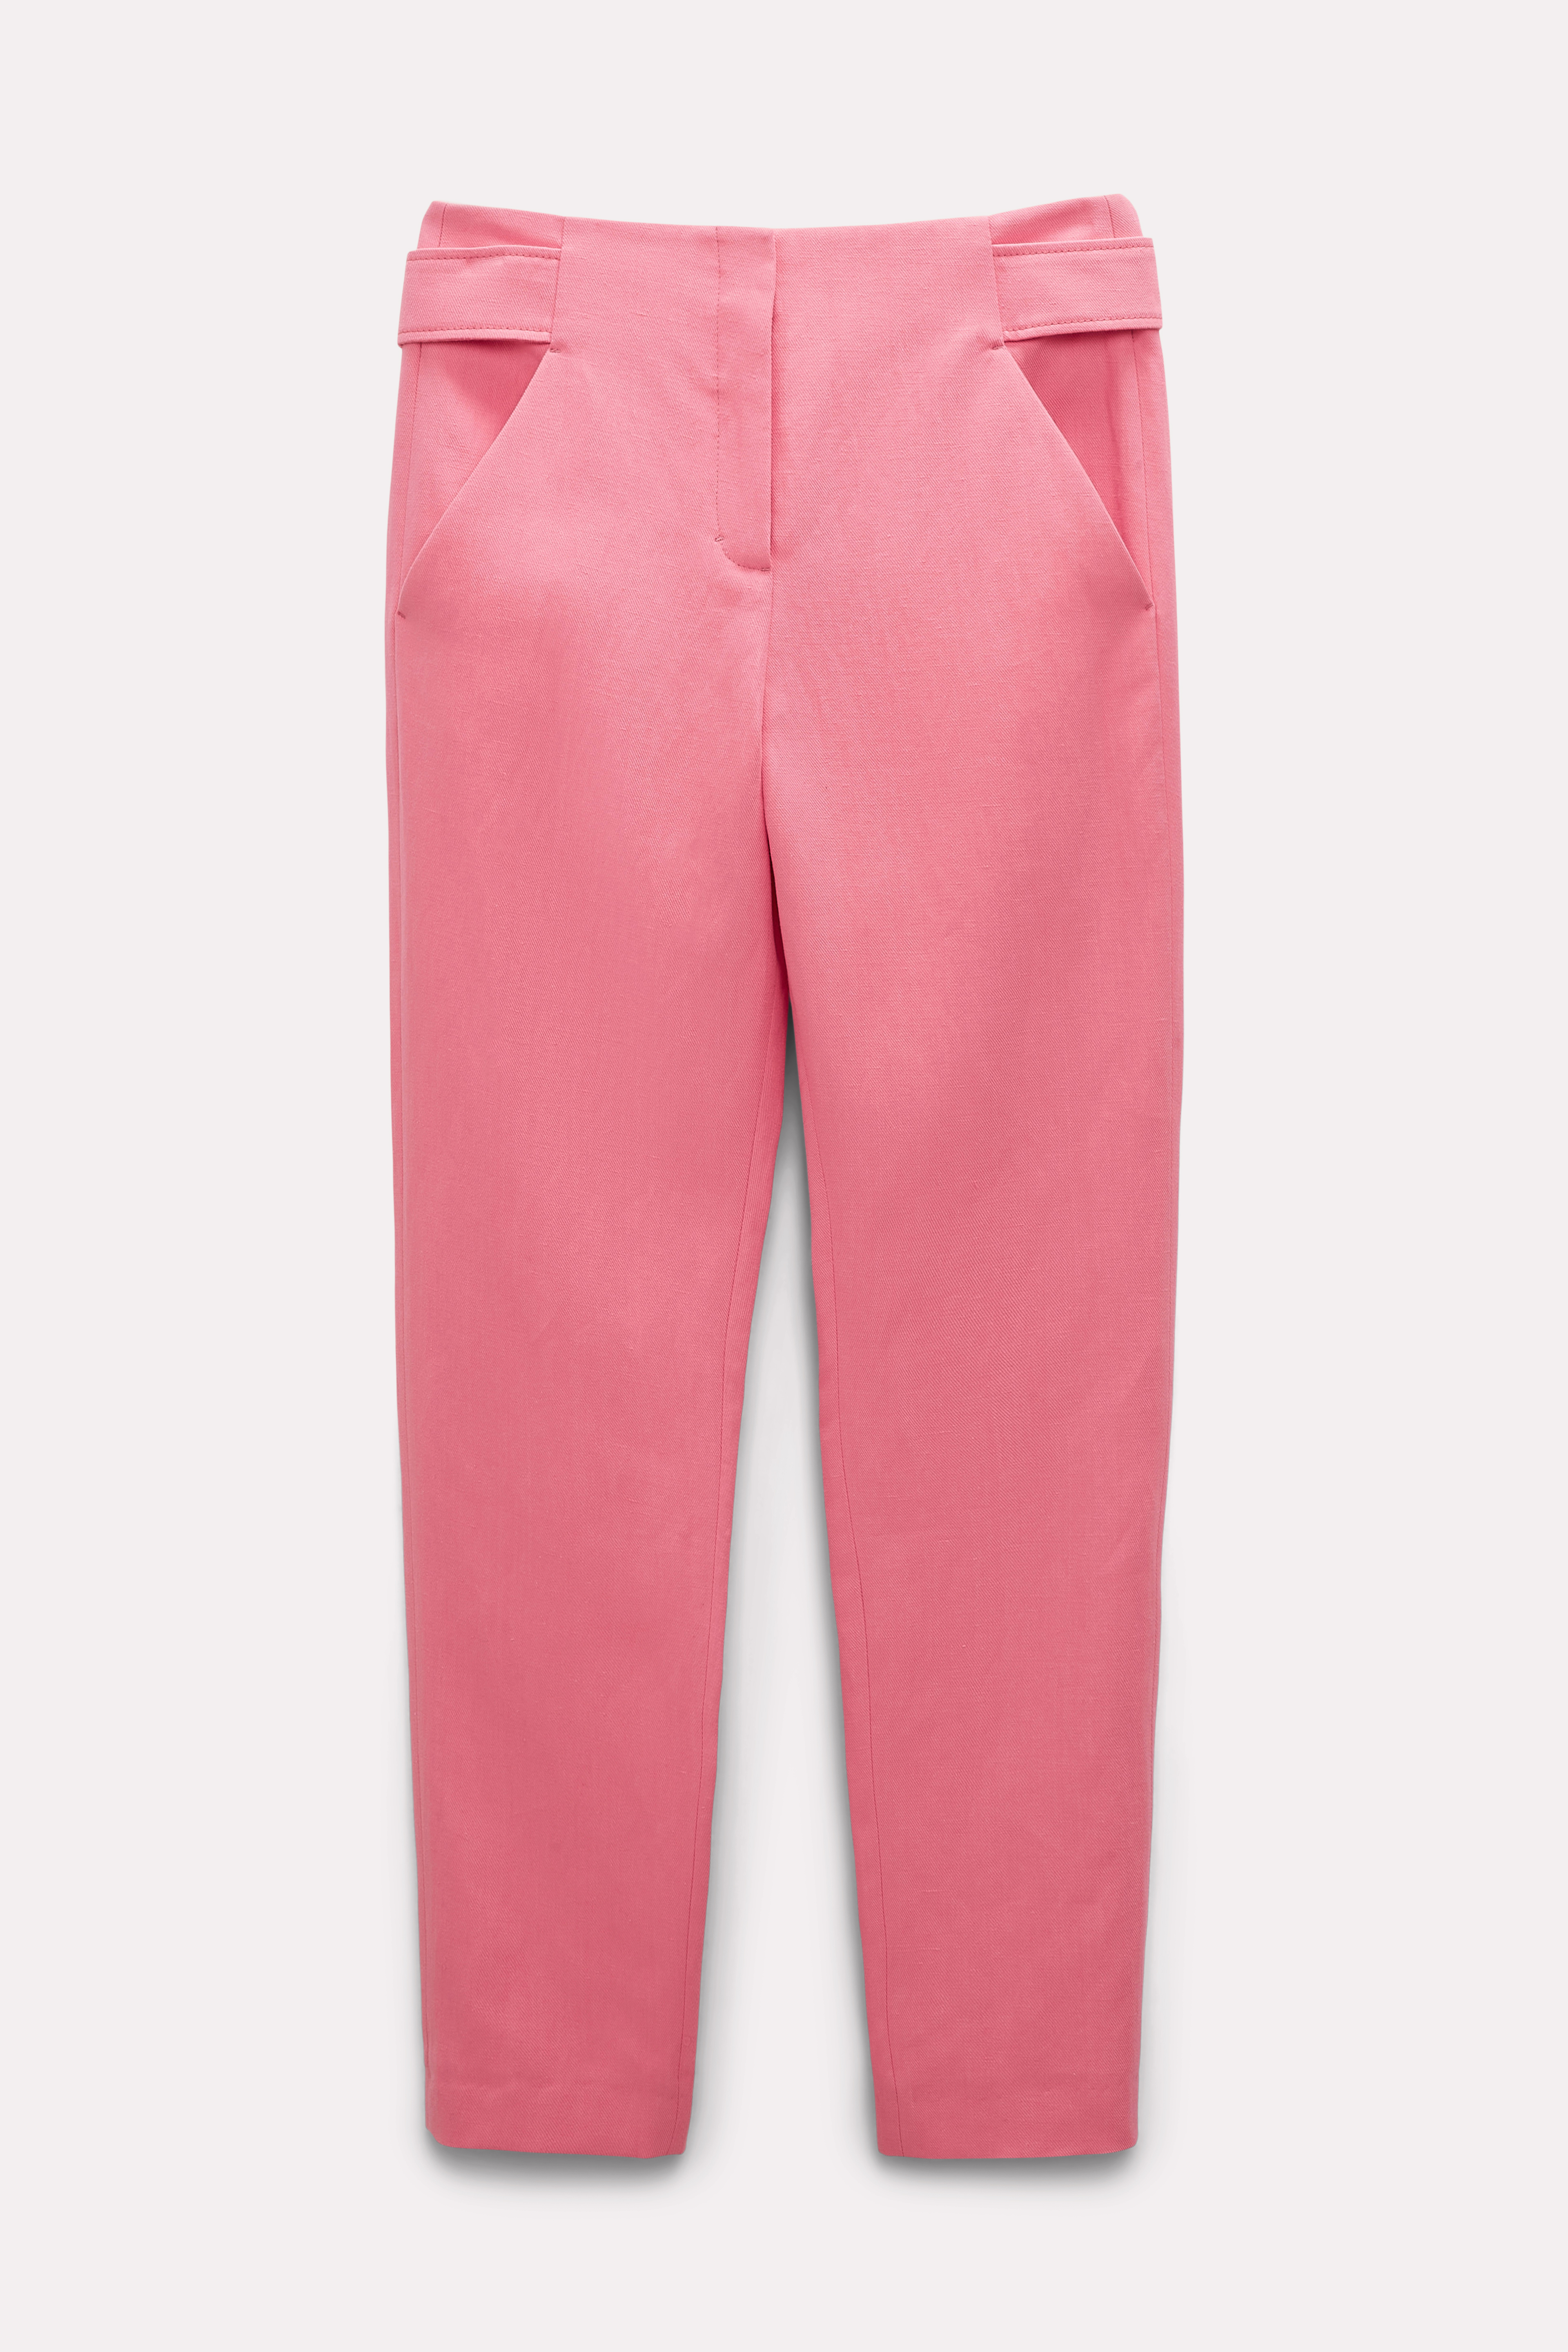 Dorothee Schumacher Lightweight Pants In Cotton-linen In Pink